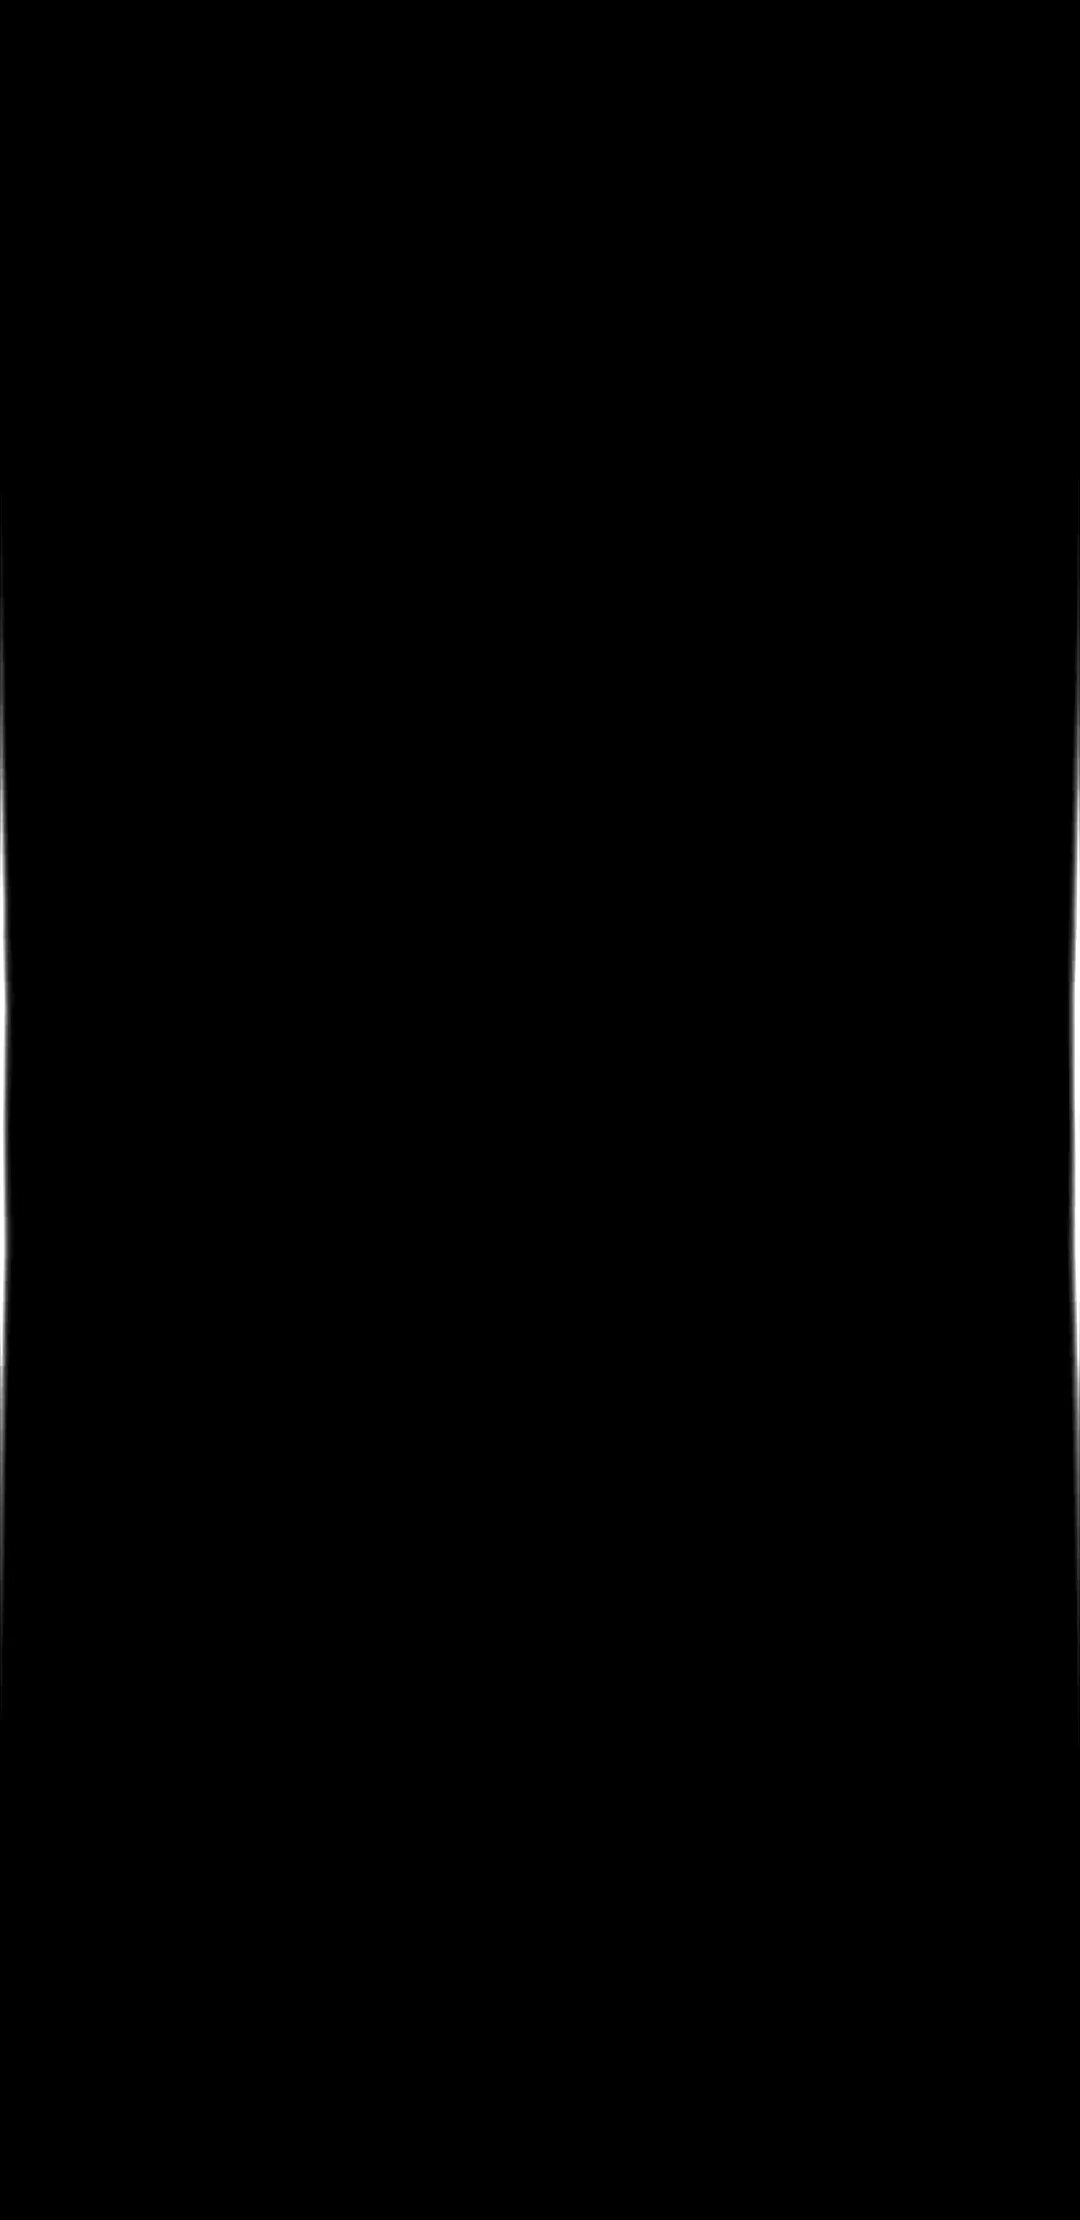 Долгий черный экран. Черный экран для амолед дисплеев. Черный фон вертикальный. Чёрный фон без ничего вертикальный. Сплошной черный.